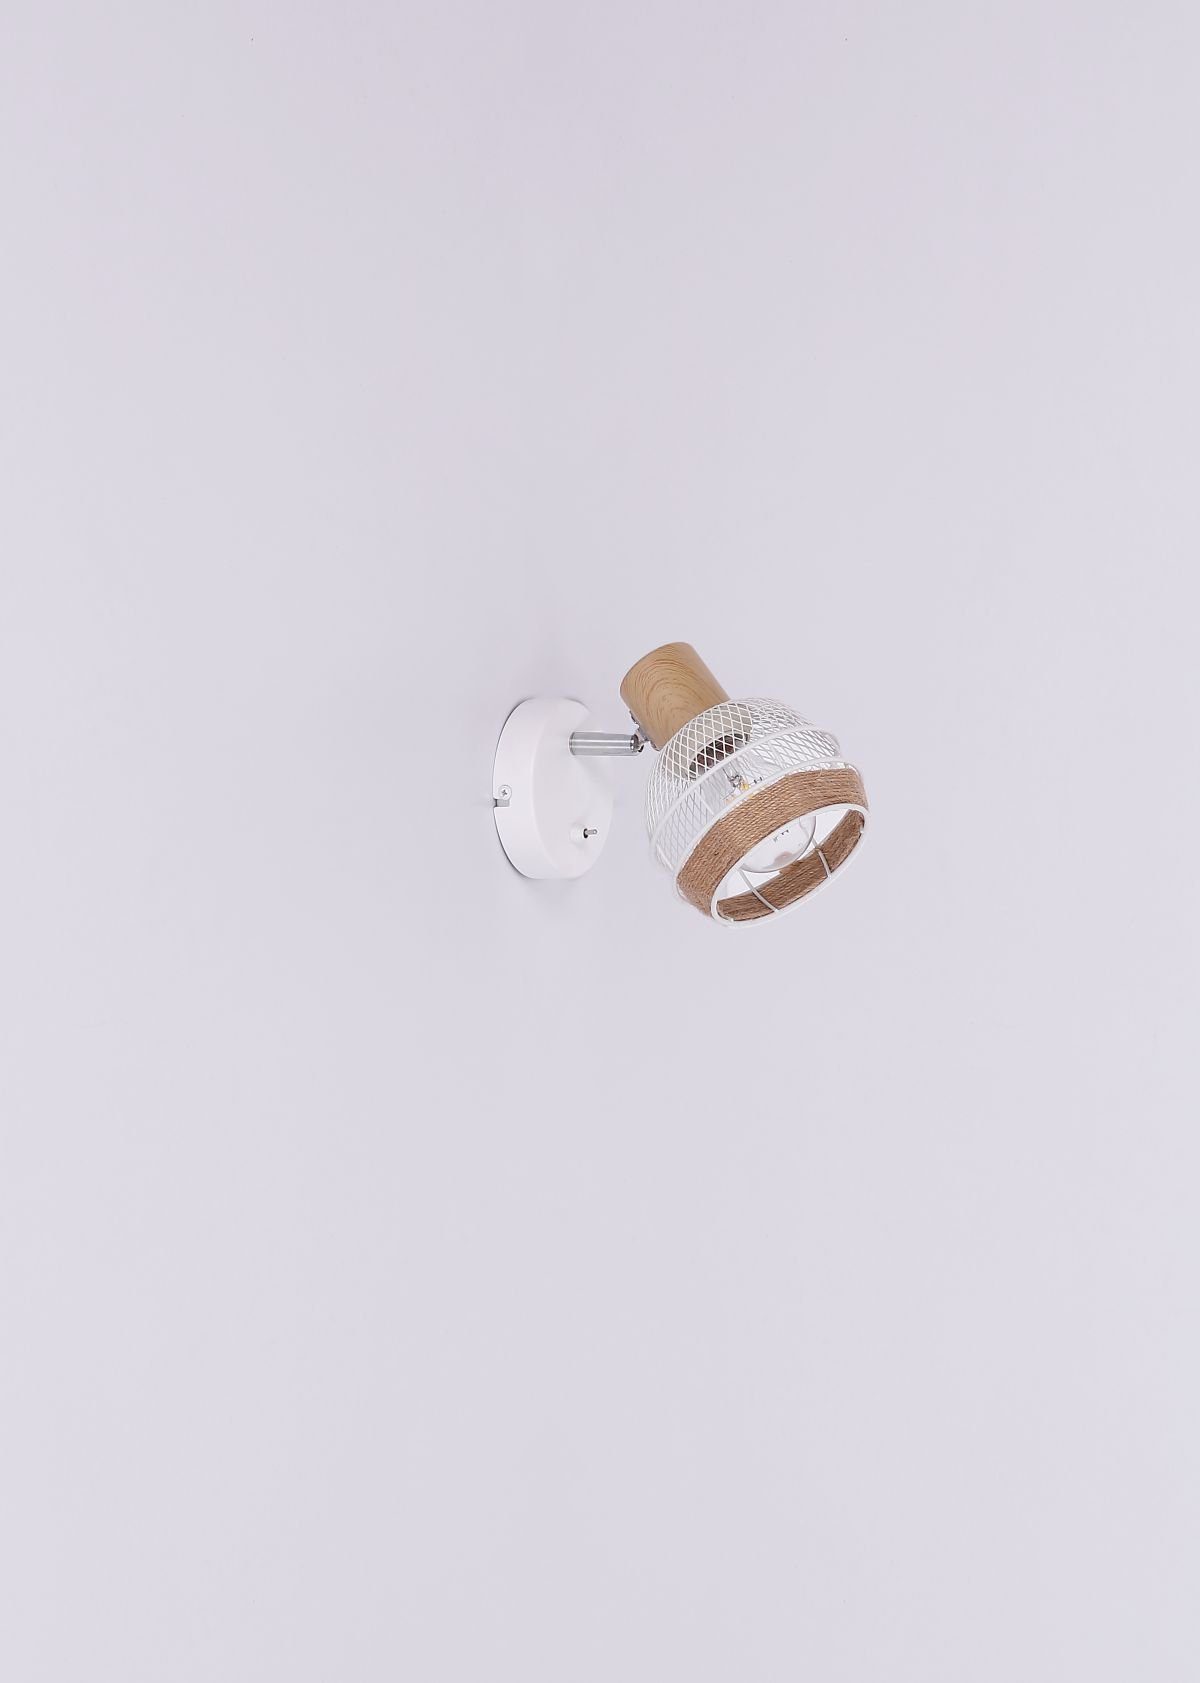 Wandlampe Schalter Globo Wohnzimmer GLOBO Wandleuchte Innen mit Wandleuchte